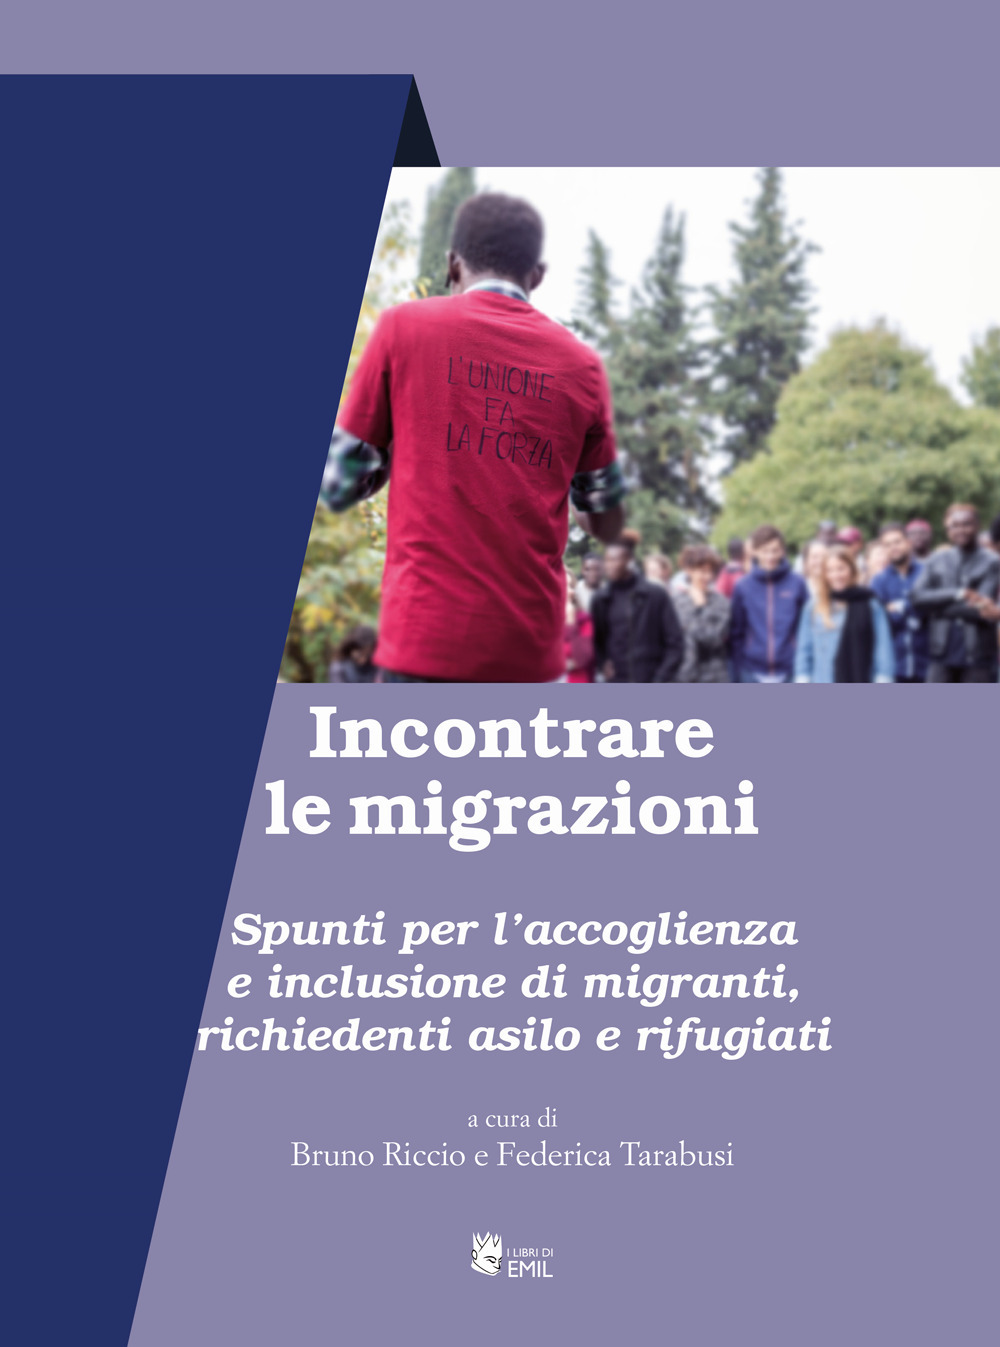 Incontrare le migrazioni. Spunti per l'accoglienza e inclusione di migranti, richiedenti asilo e rifugiati